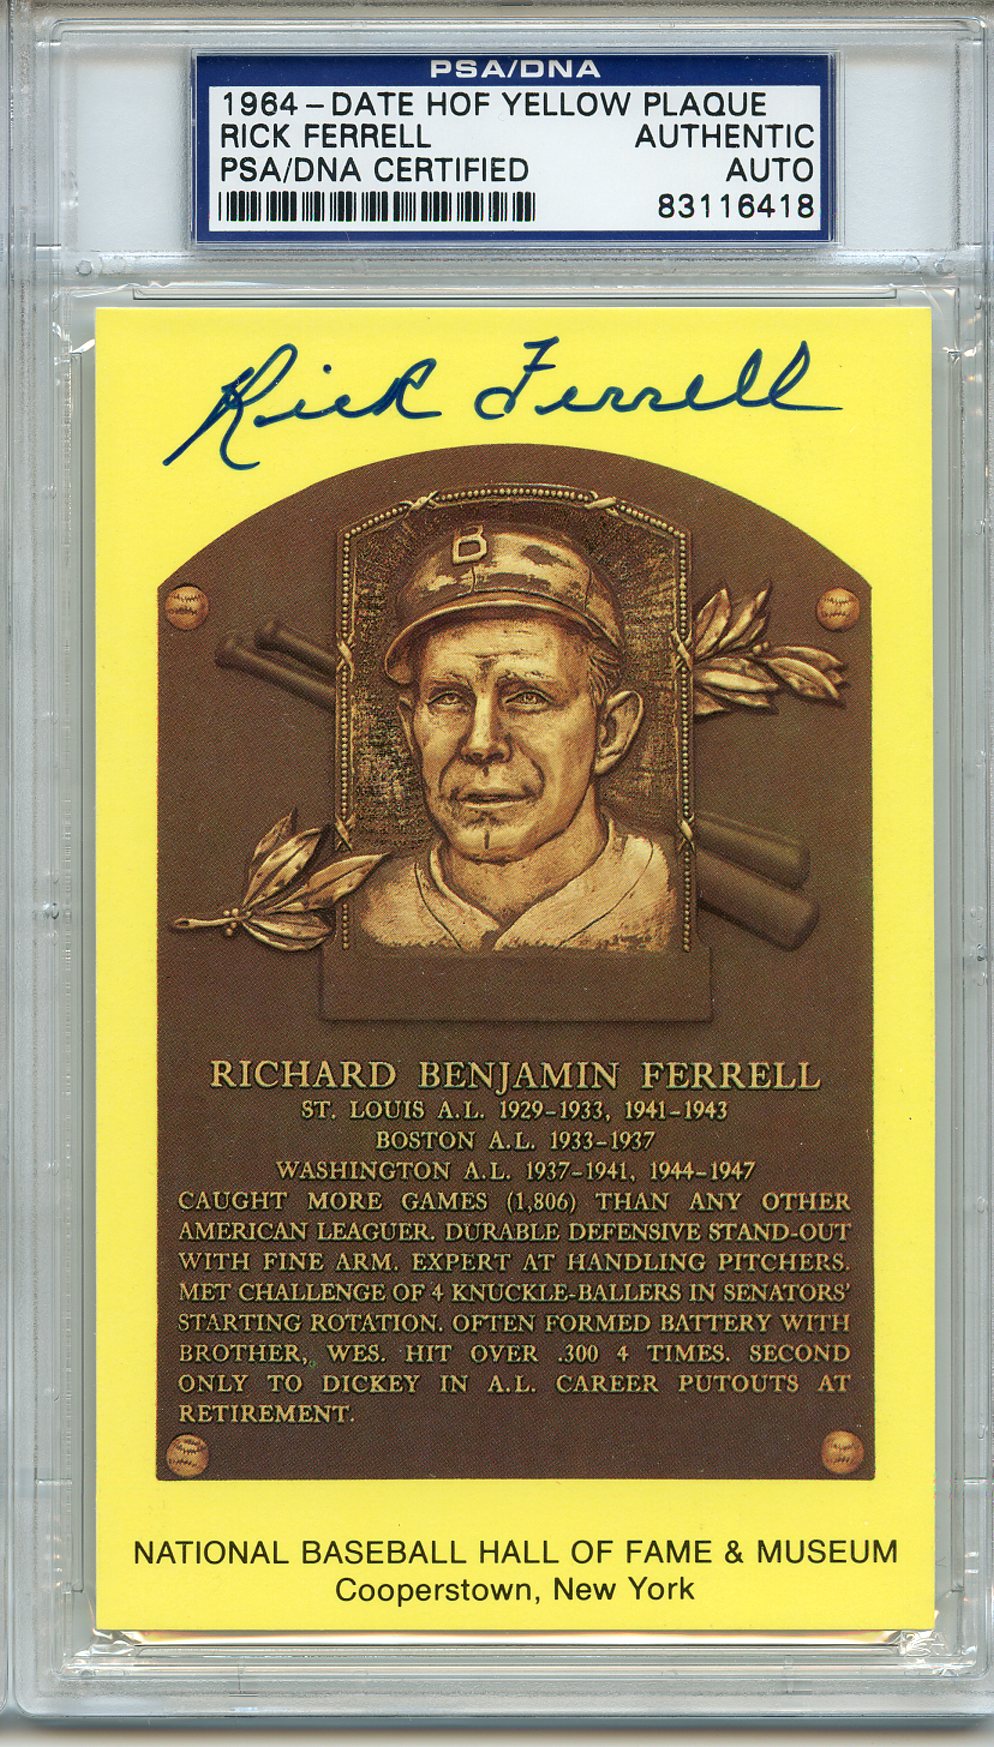 1964 Rick Ferrell Signed HOF Postcard Browns Red Sox Senators PS